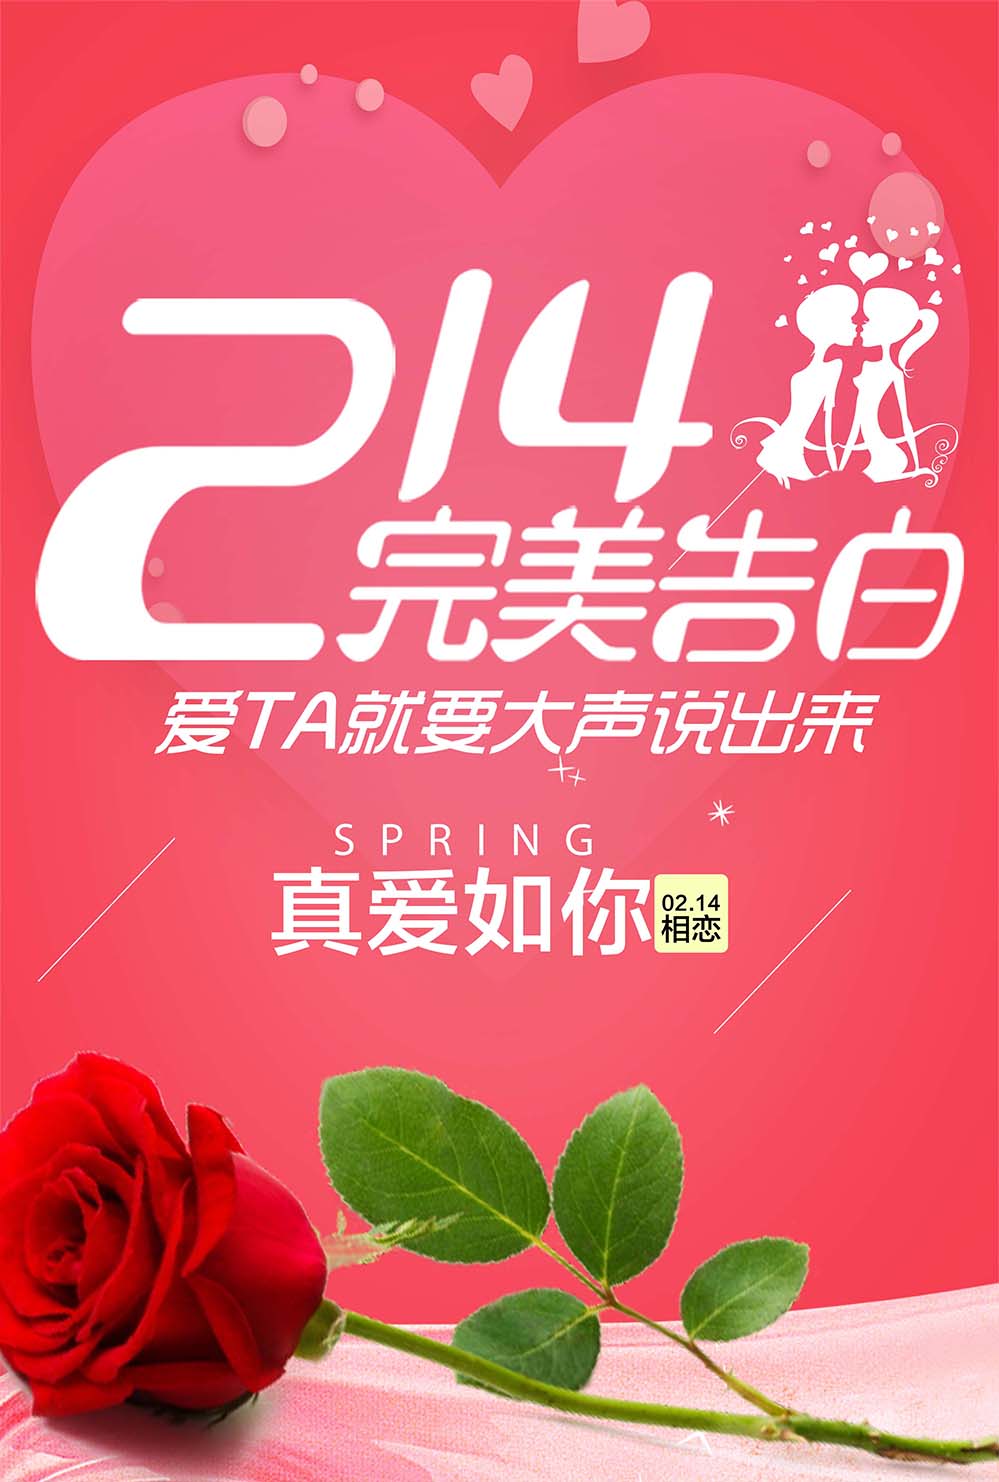 214七夕情人节完美告白真爱如你海报设计PSD源文件